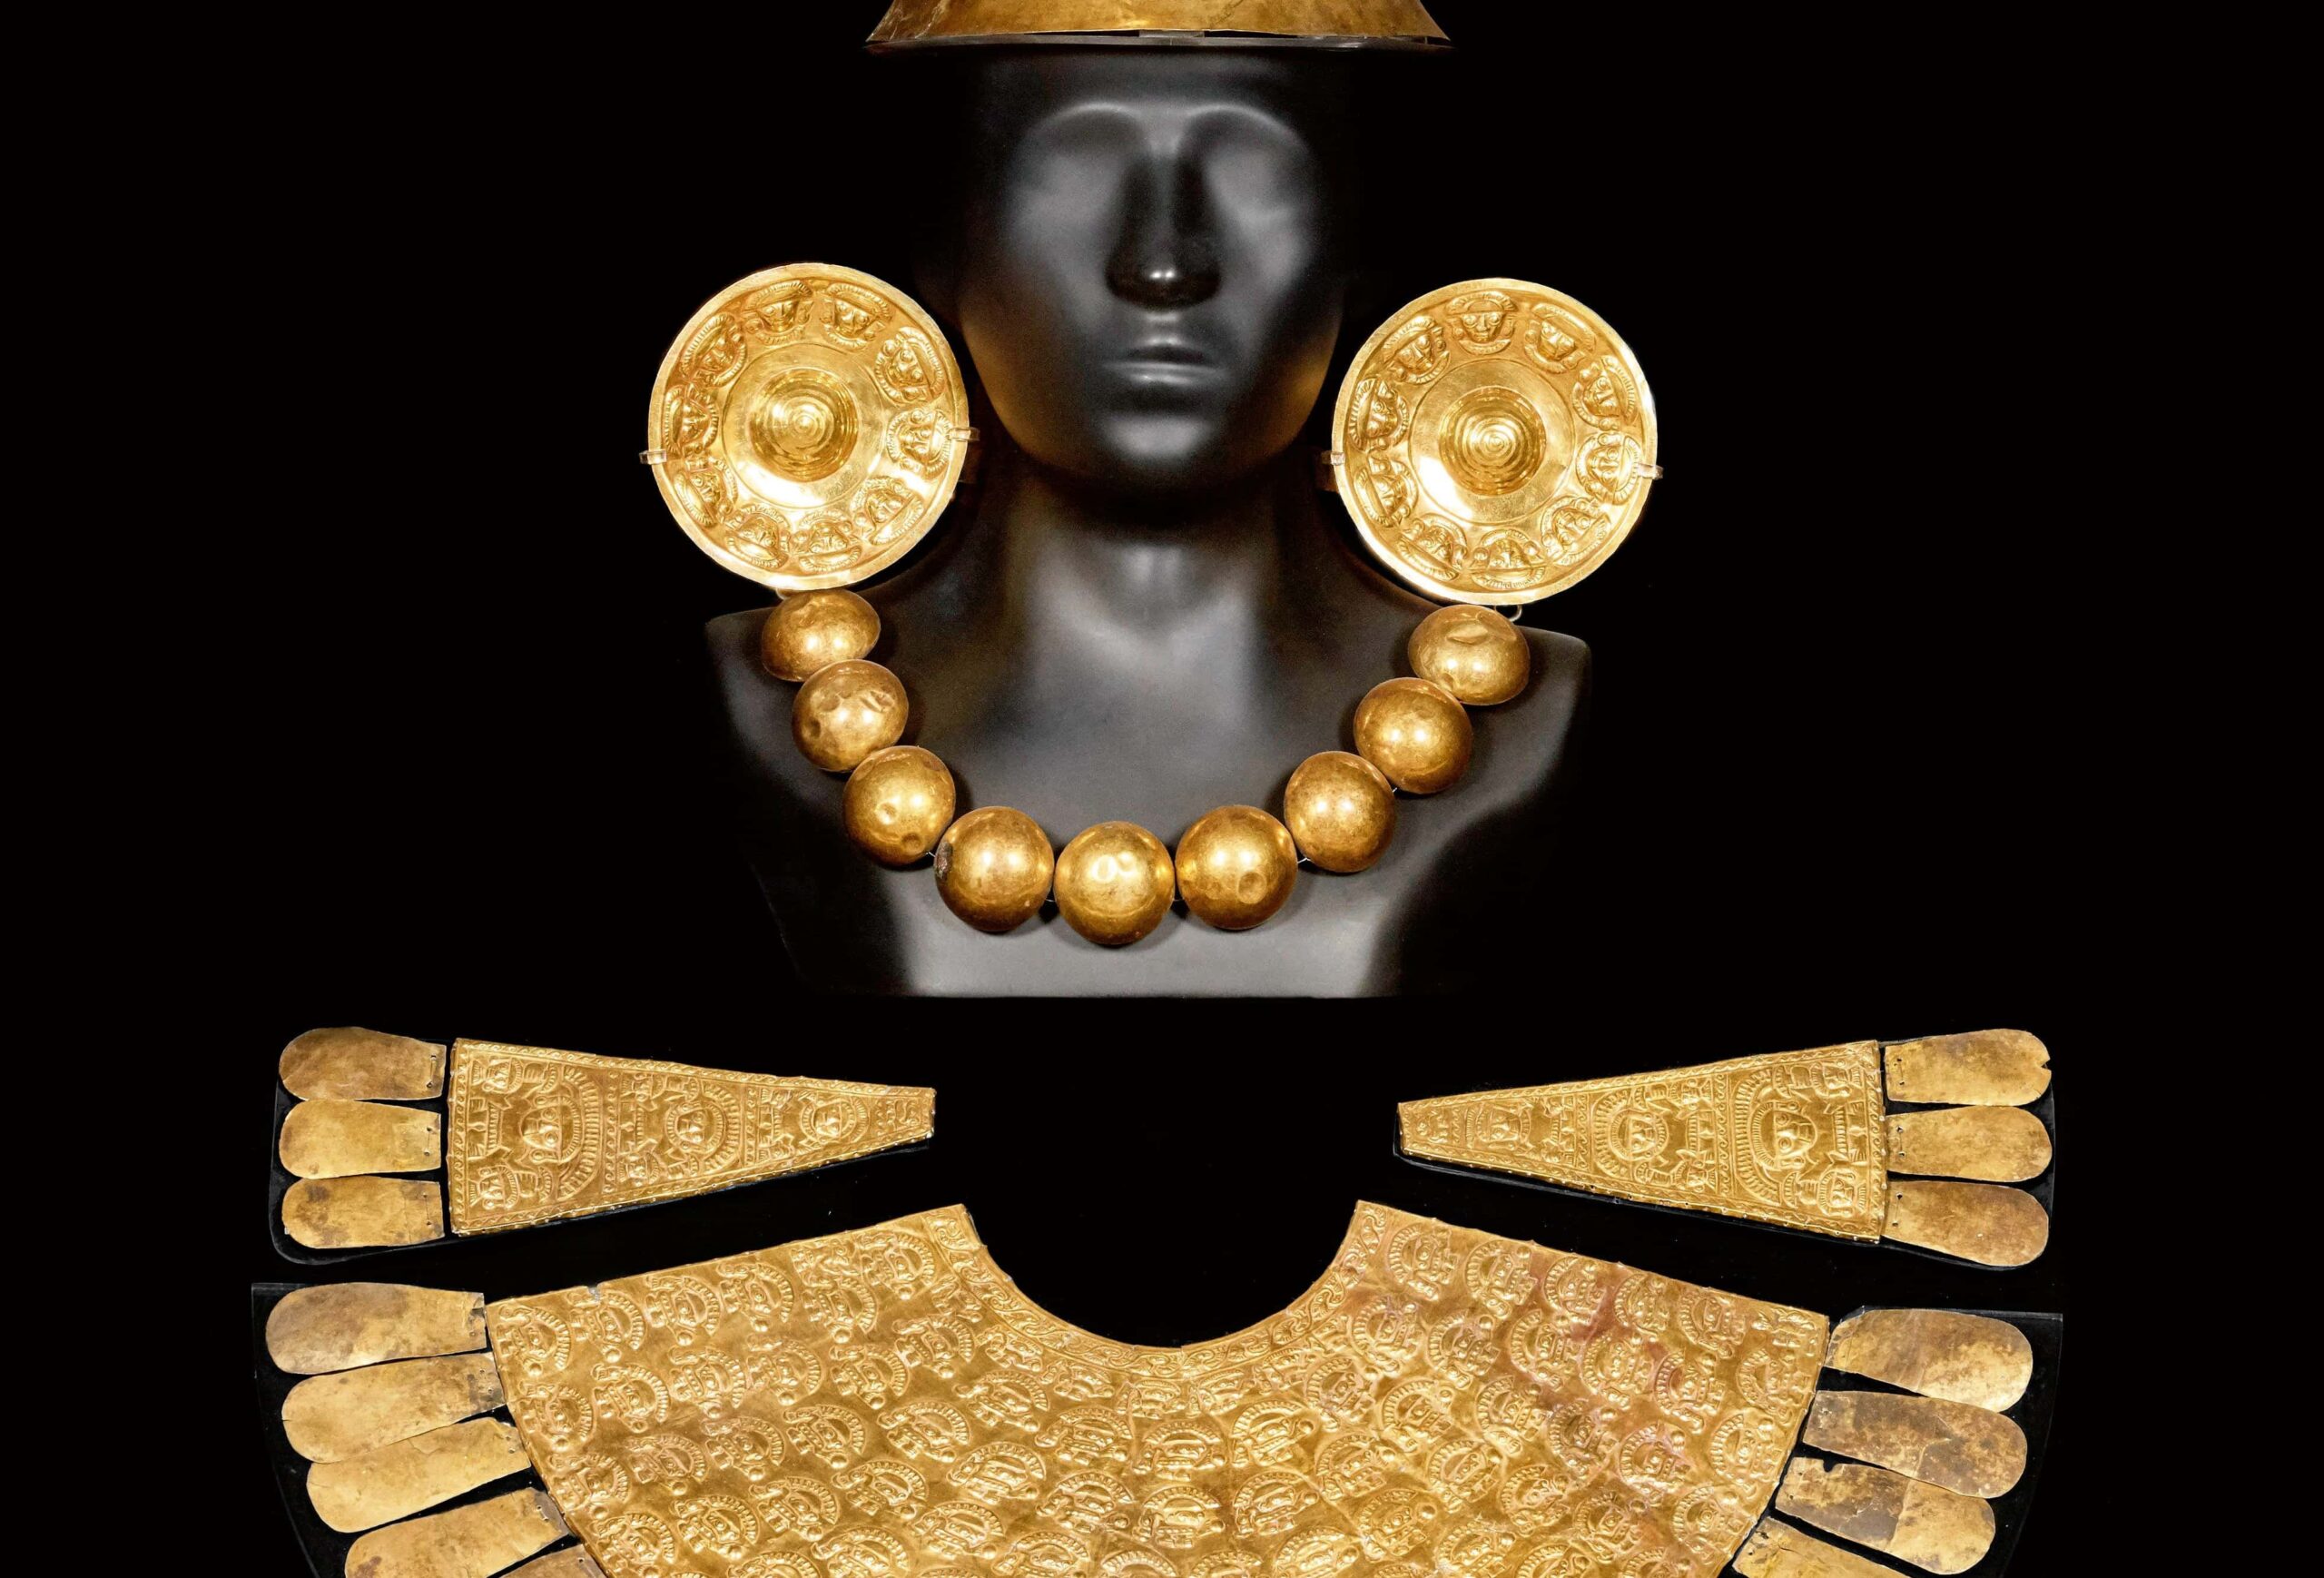 Perù - una statuina nera indossa un copricapo in oro, una gonna d oro e una collana d'oro